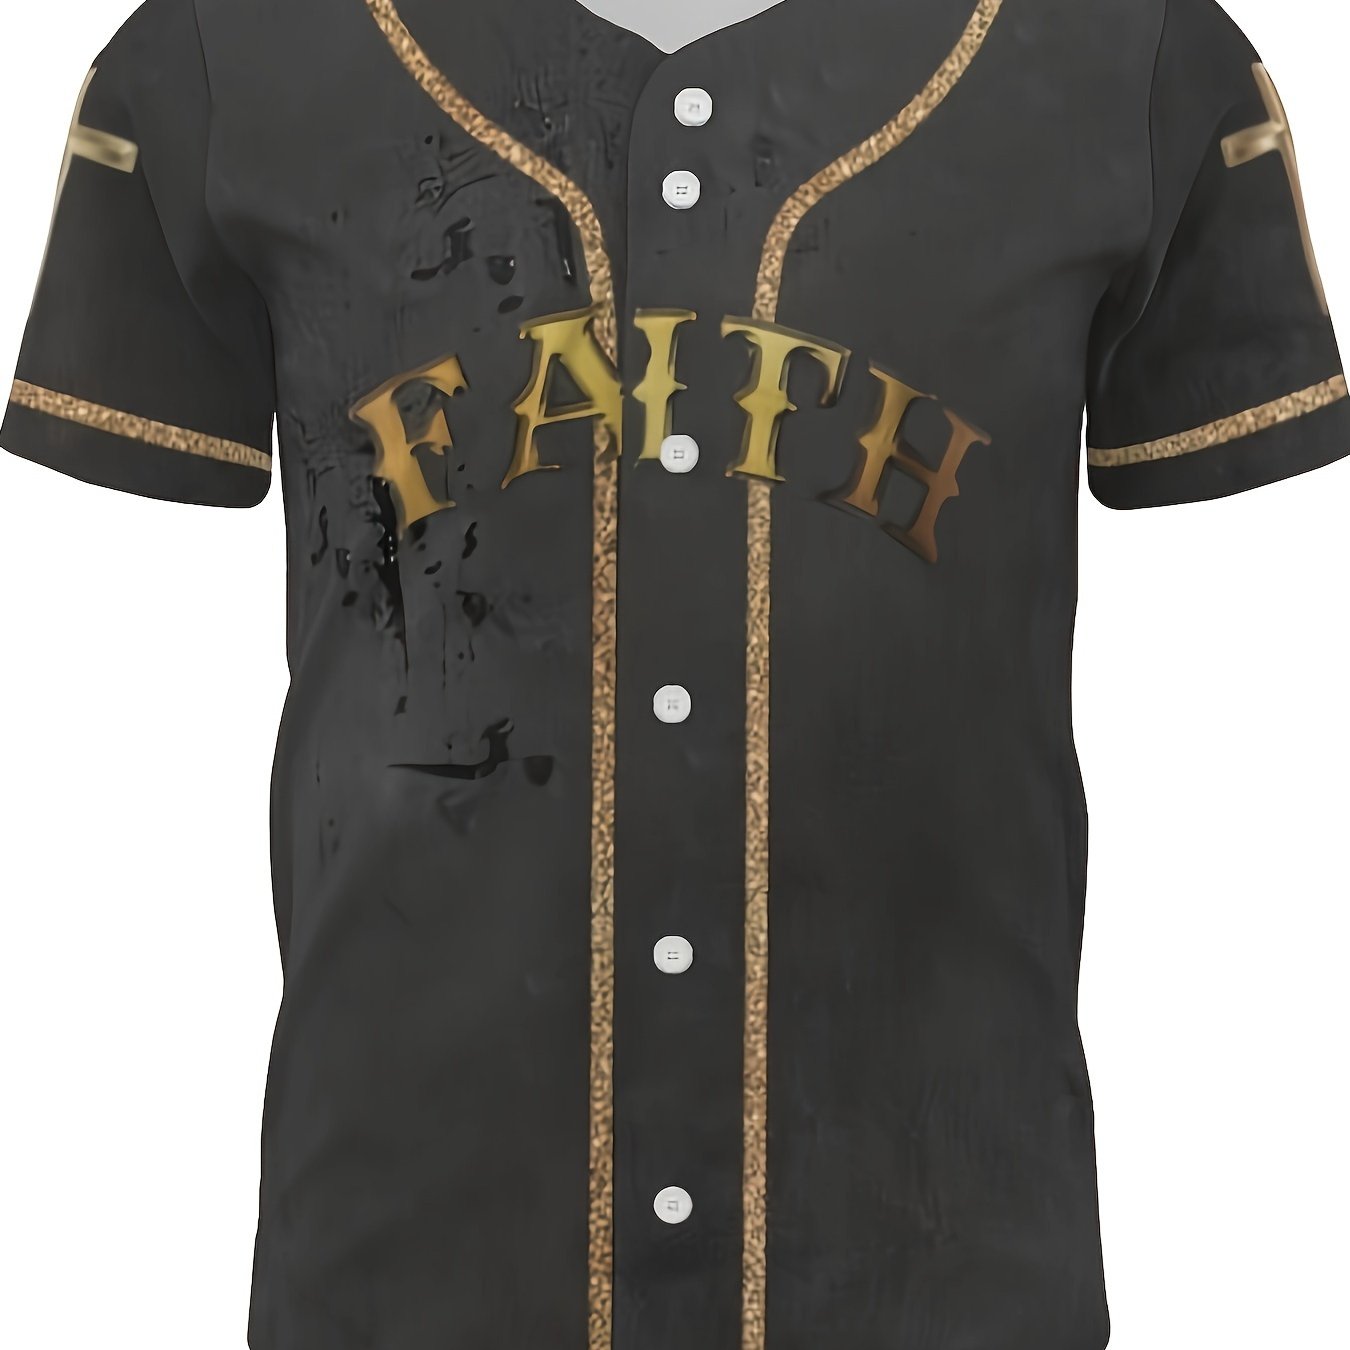 FAITH Men's Christian Baseball Jersey claimedbygoddesigns